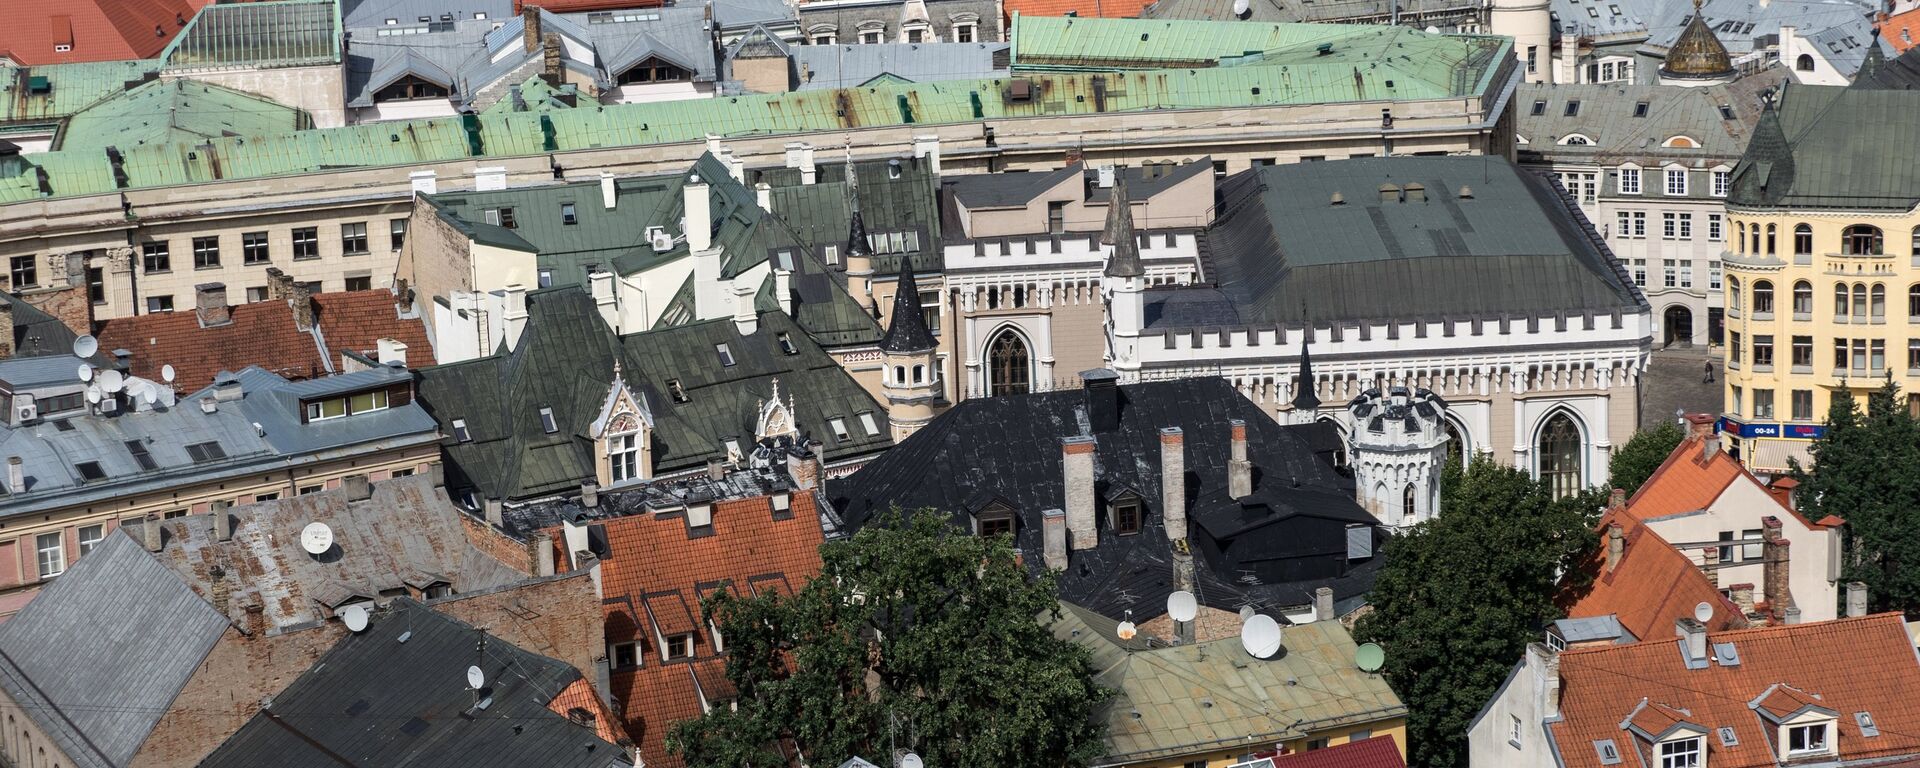 Крыши старого города в Риге в Латвии - Sputnik Латвия, 1920, 12.07.2020